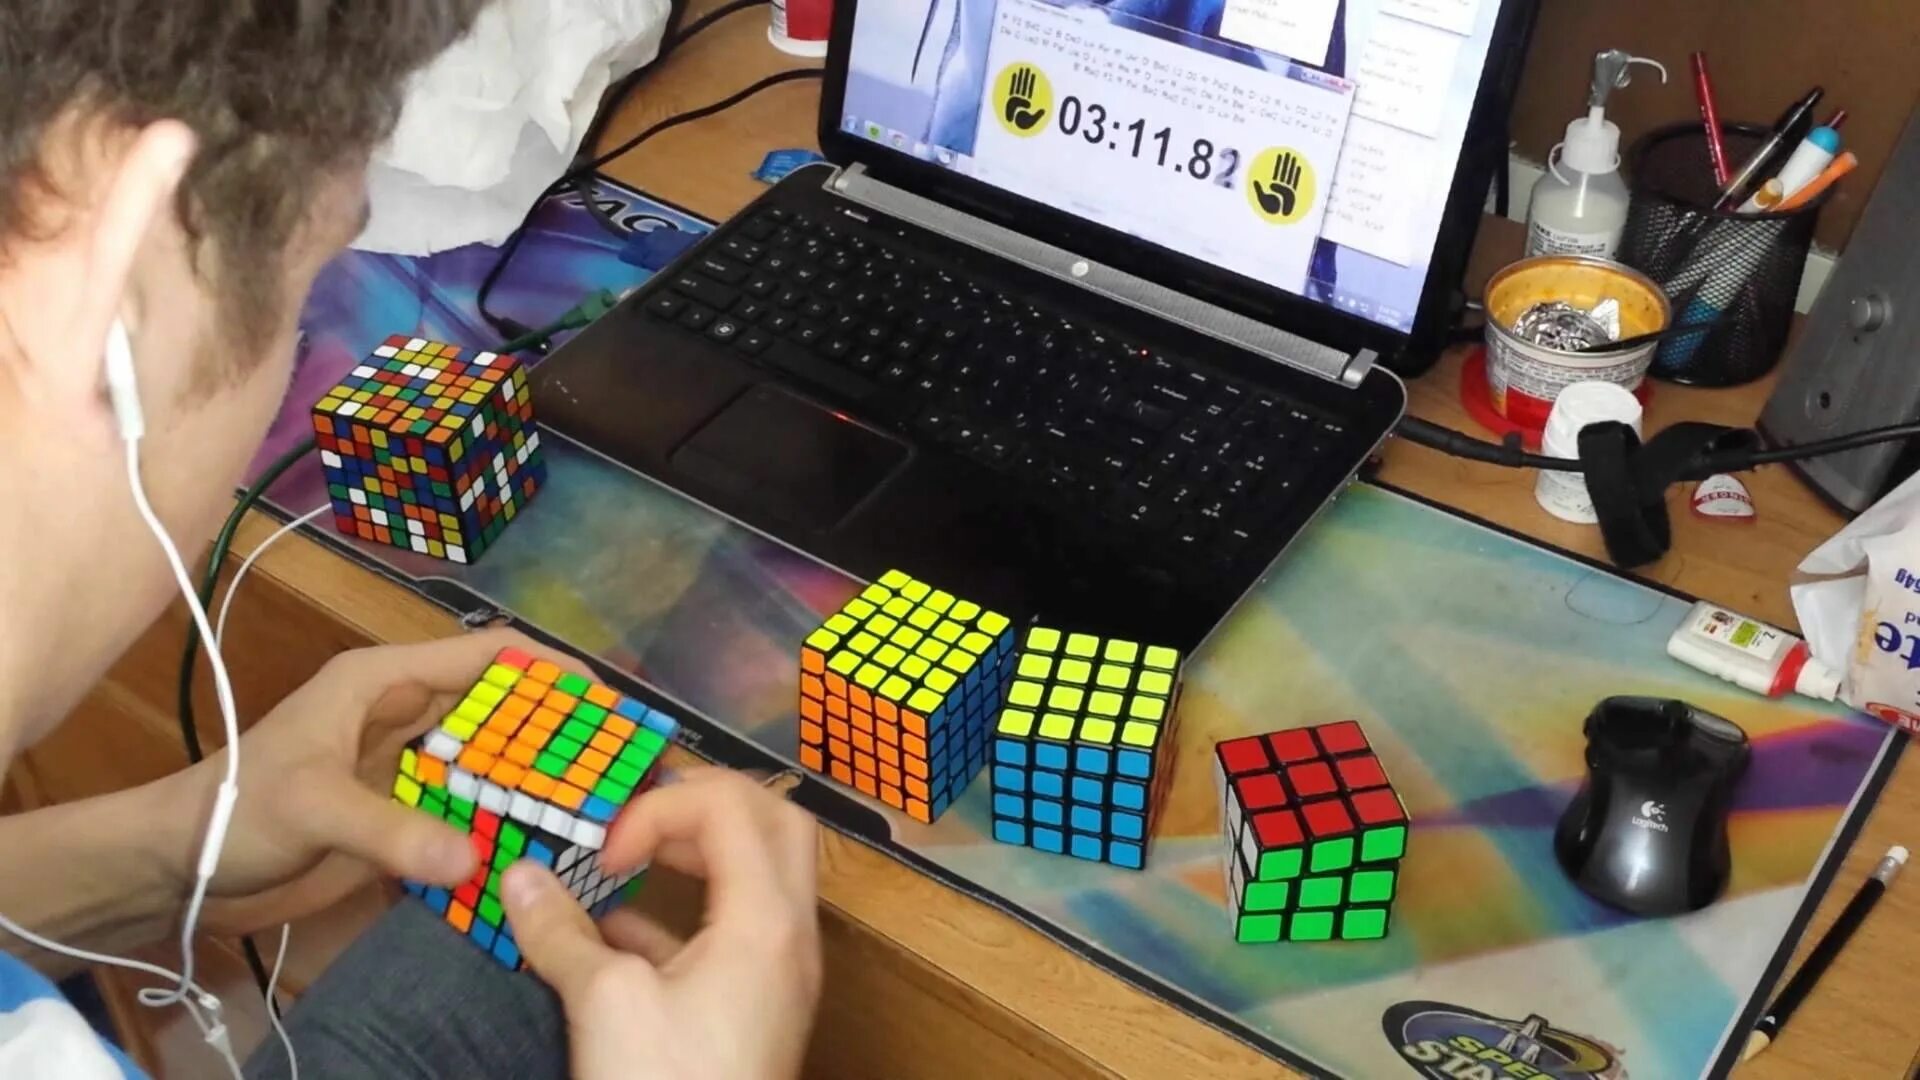 Мировой рекорд по сборке 3х3. Мировой рекорд кубик Рубика 2x2. Мальчик собирает кубик Рубика. Мировой рекорд по собиранию кубика Рубика.